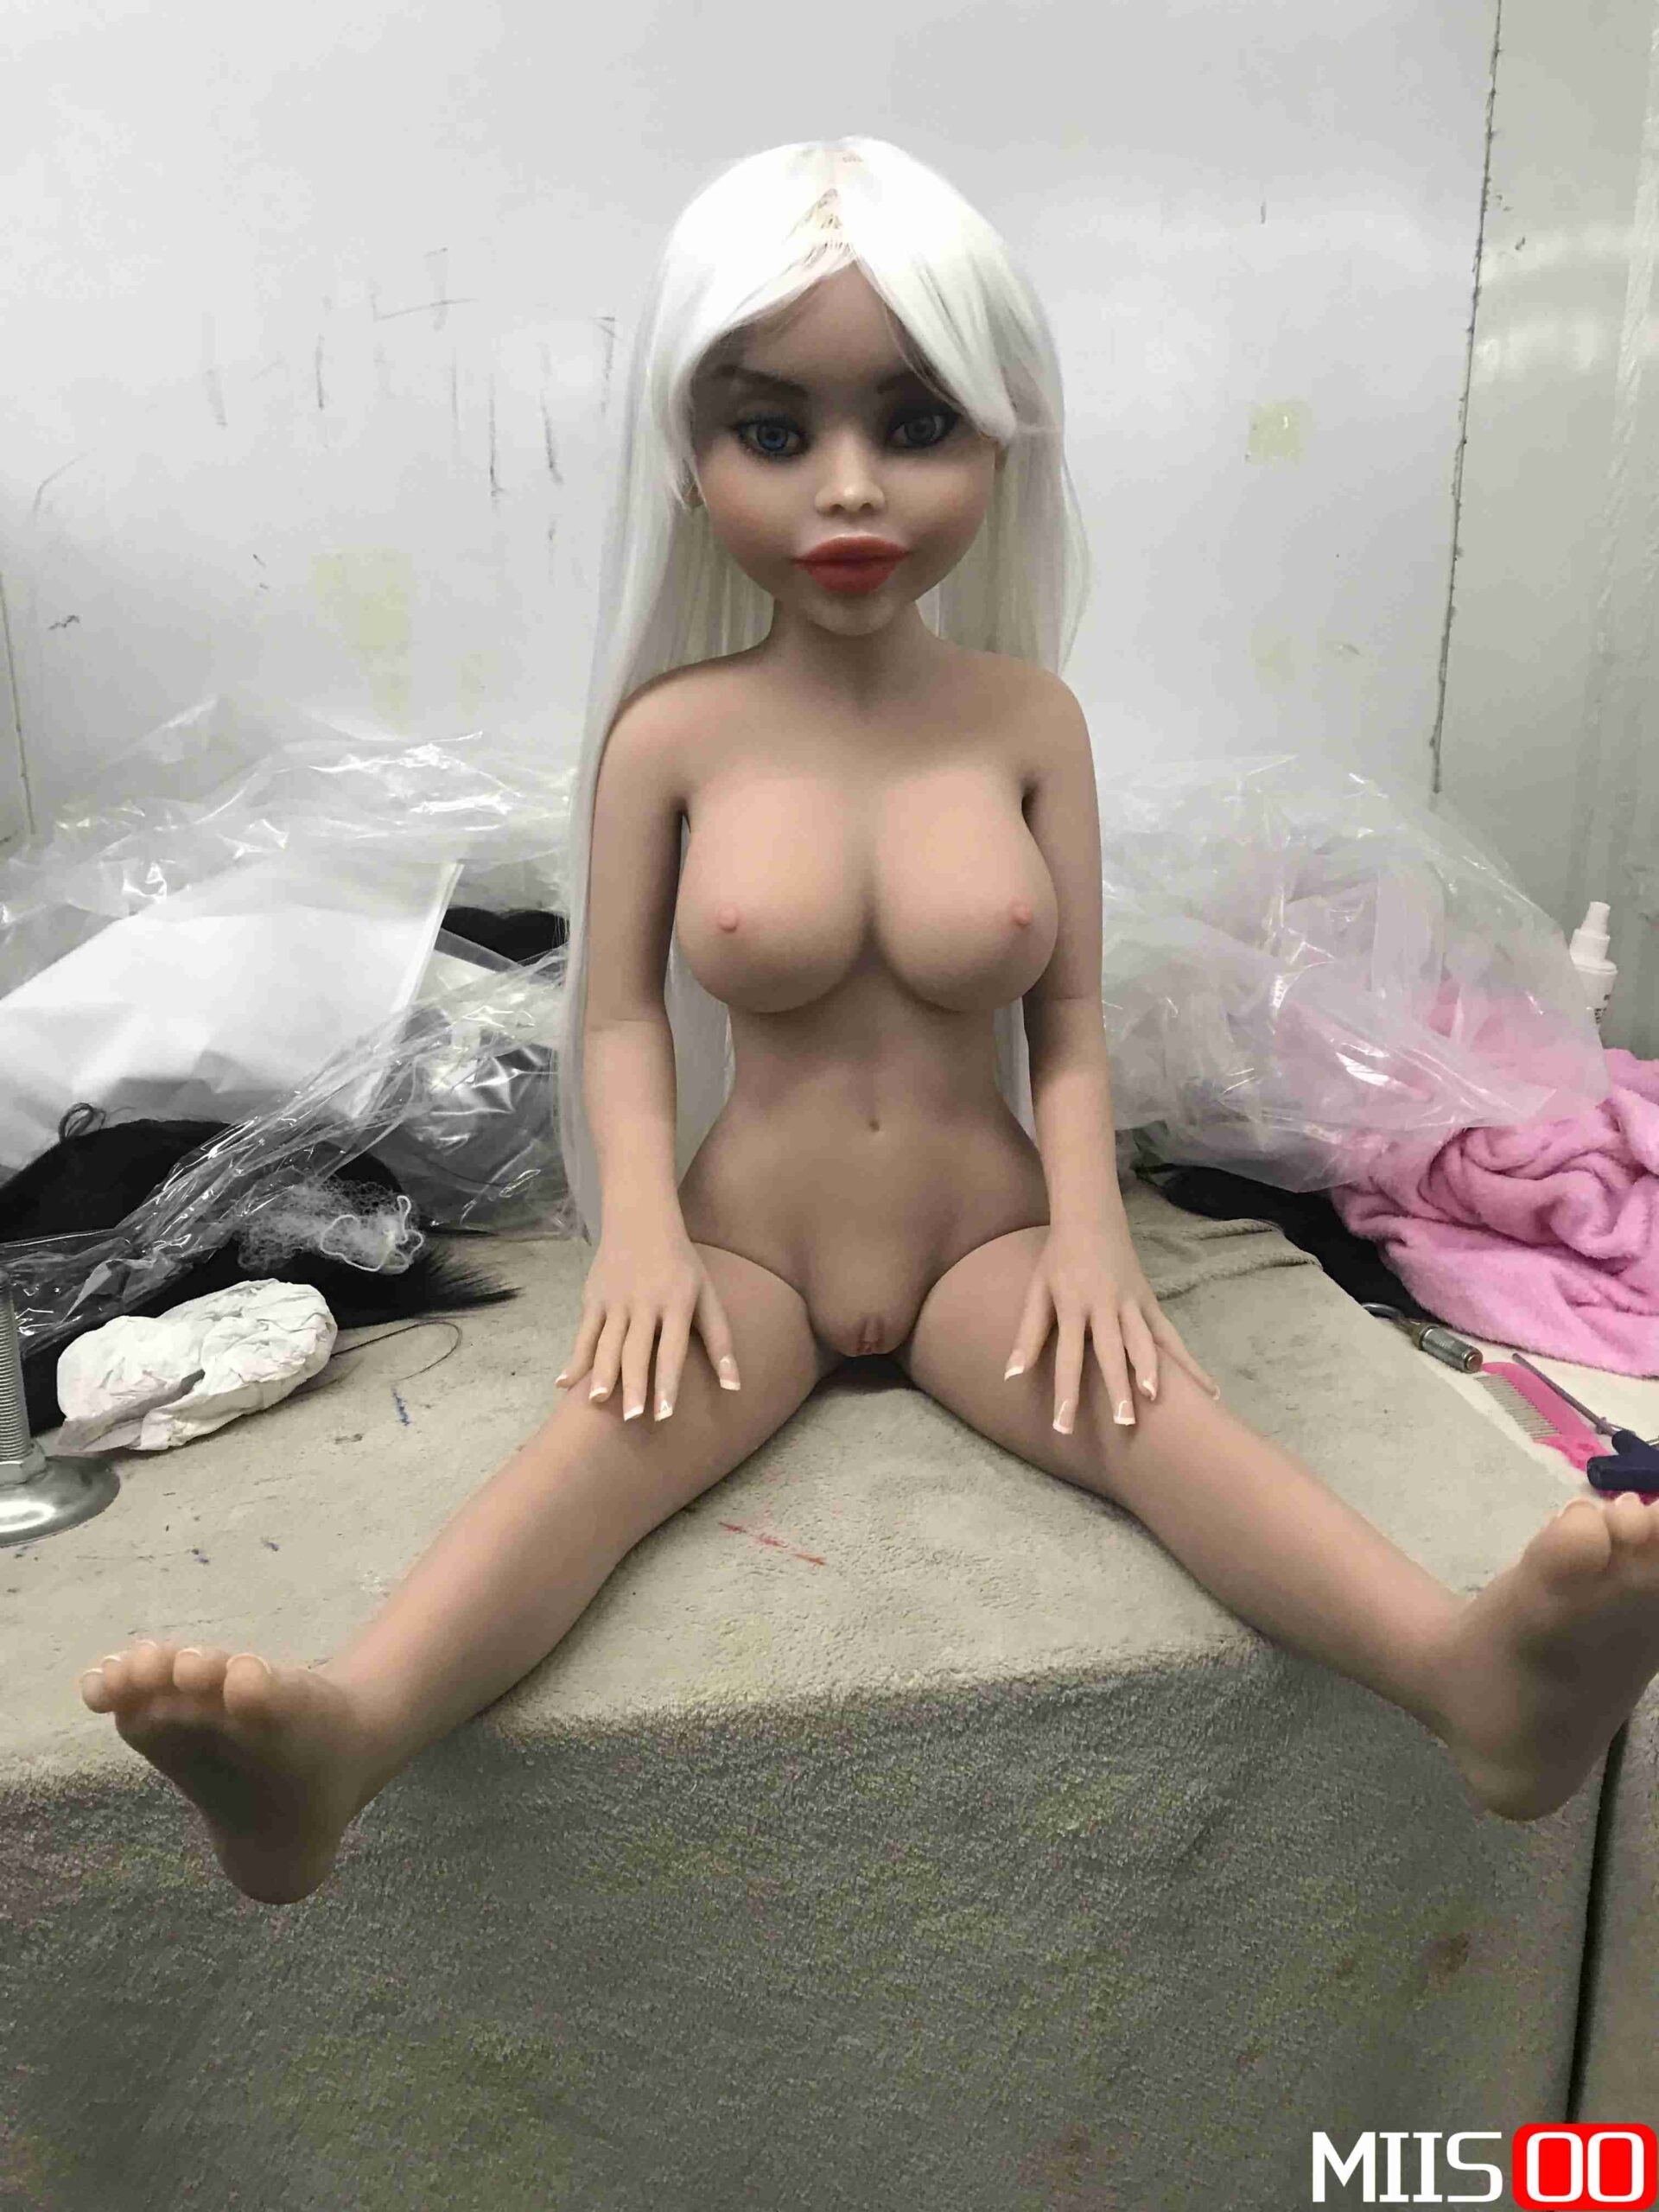 Sex Doll Gallery-MiisooDoll